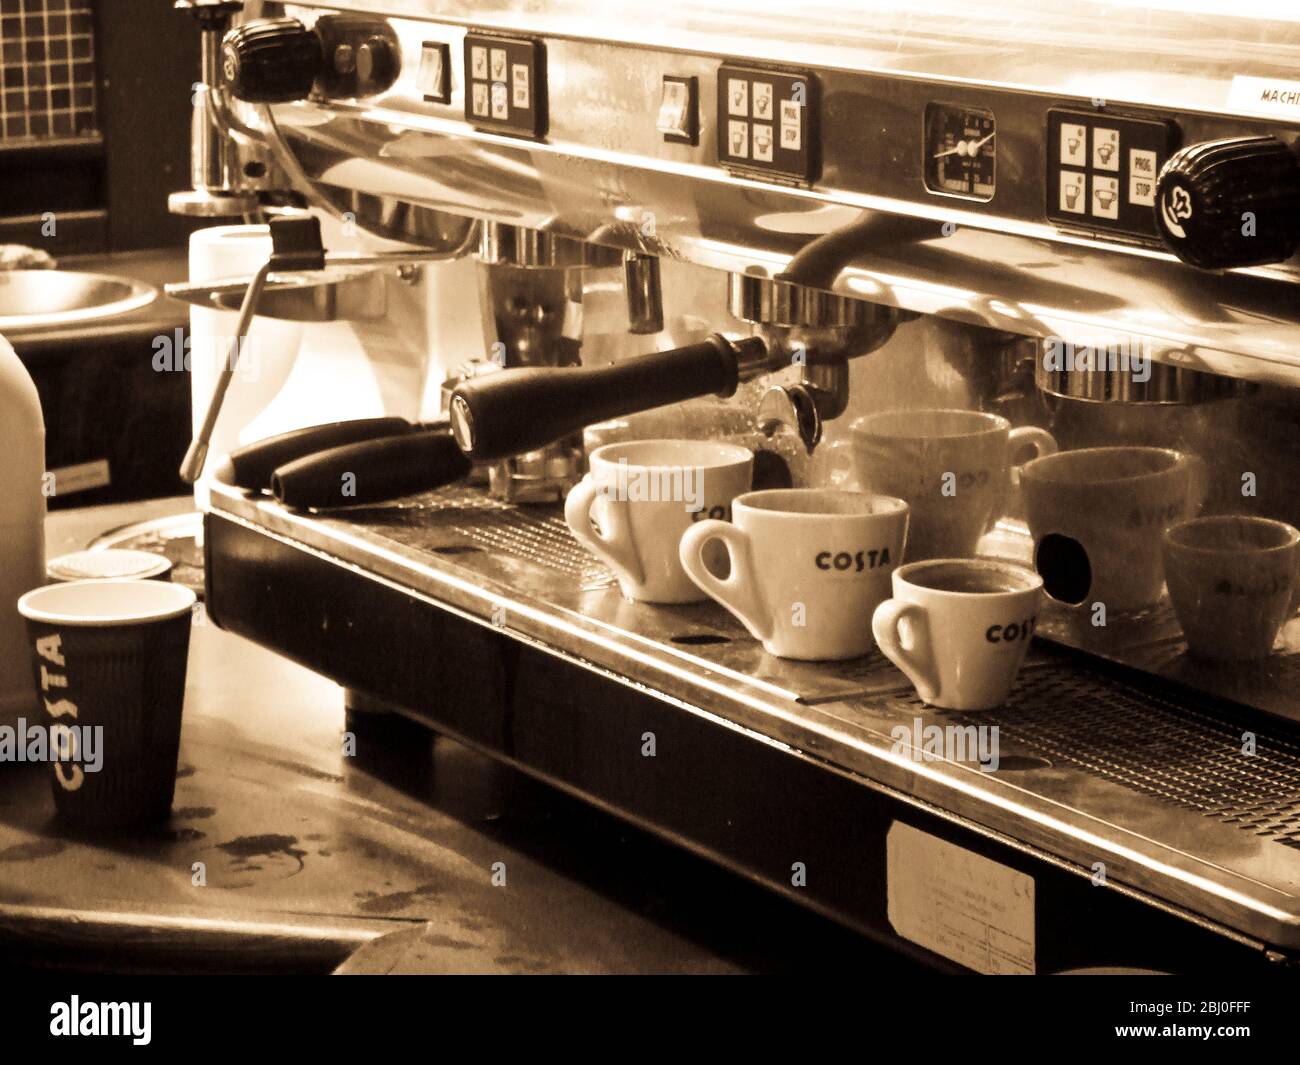 Dettagli interni della caffetteria Costa presso la stazione di servizio dell'autostrada, con macchina espresso. - Foto Stock